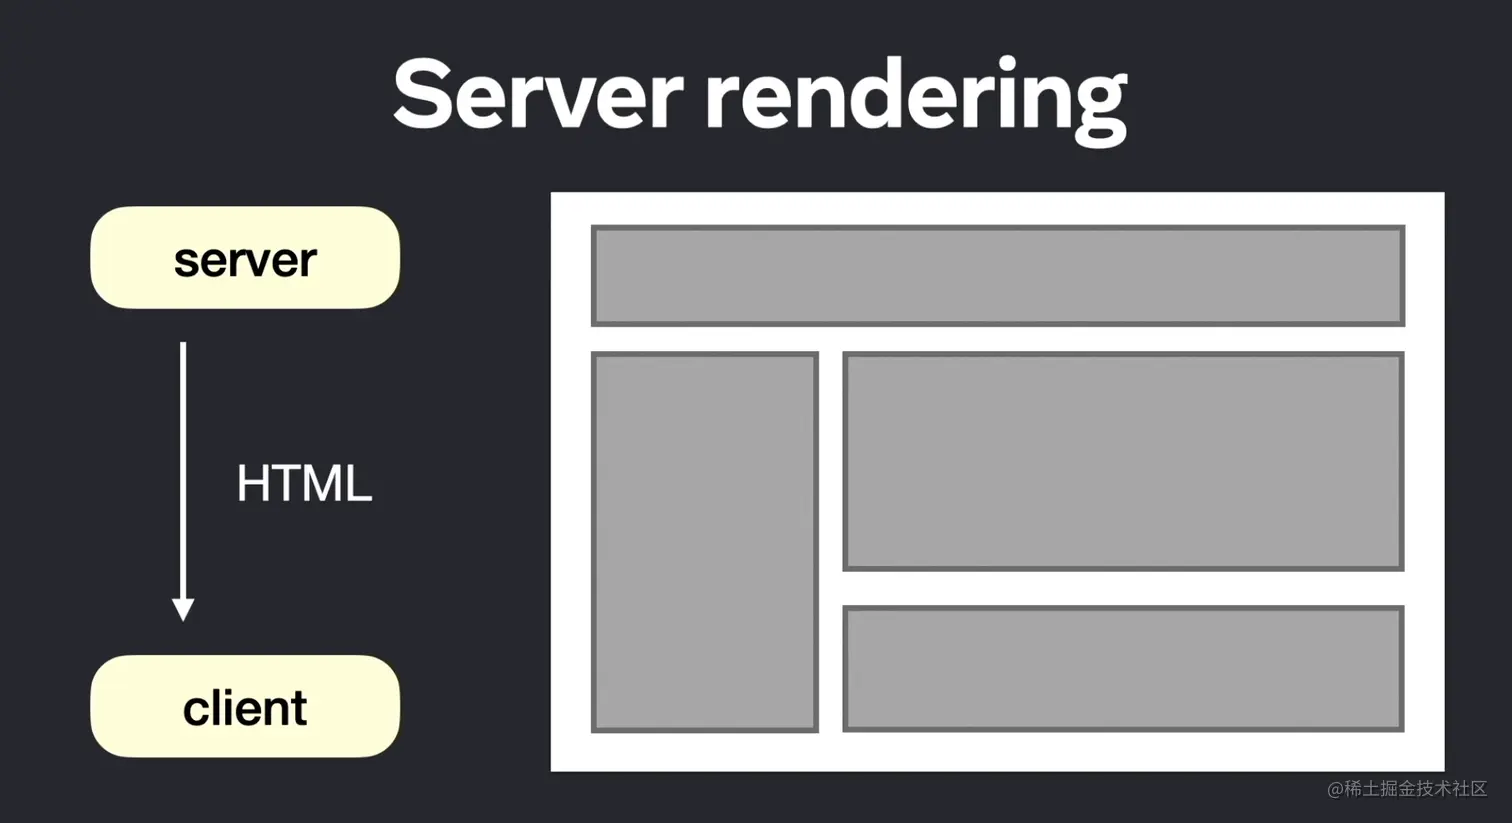 Server rendering